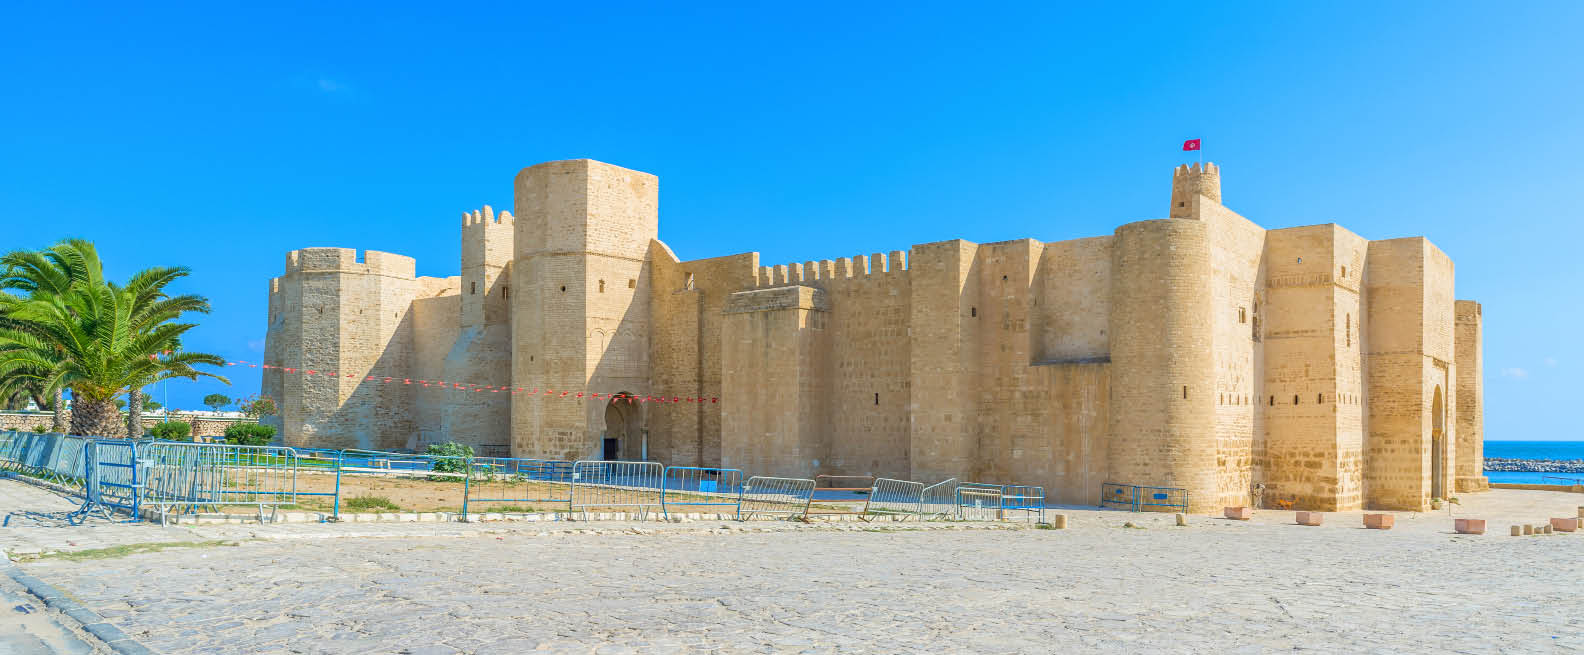 Monastir en Tunisie est réputée pour ses plages splendides, mais aussi pour son riche patrimoine. © Adobe Stock